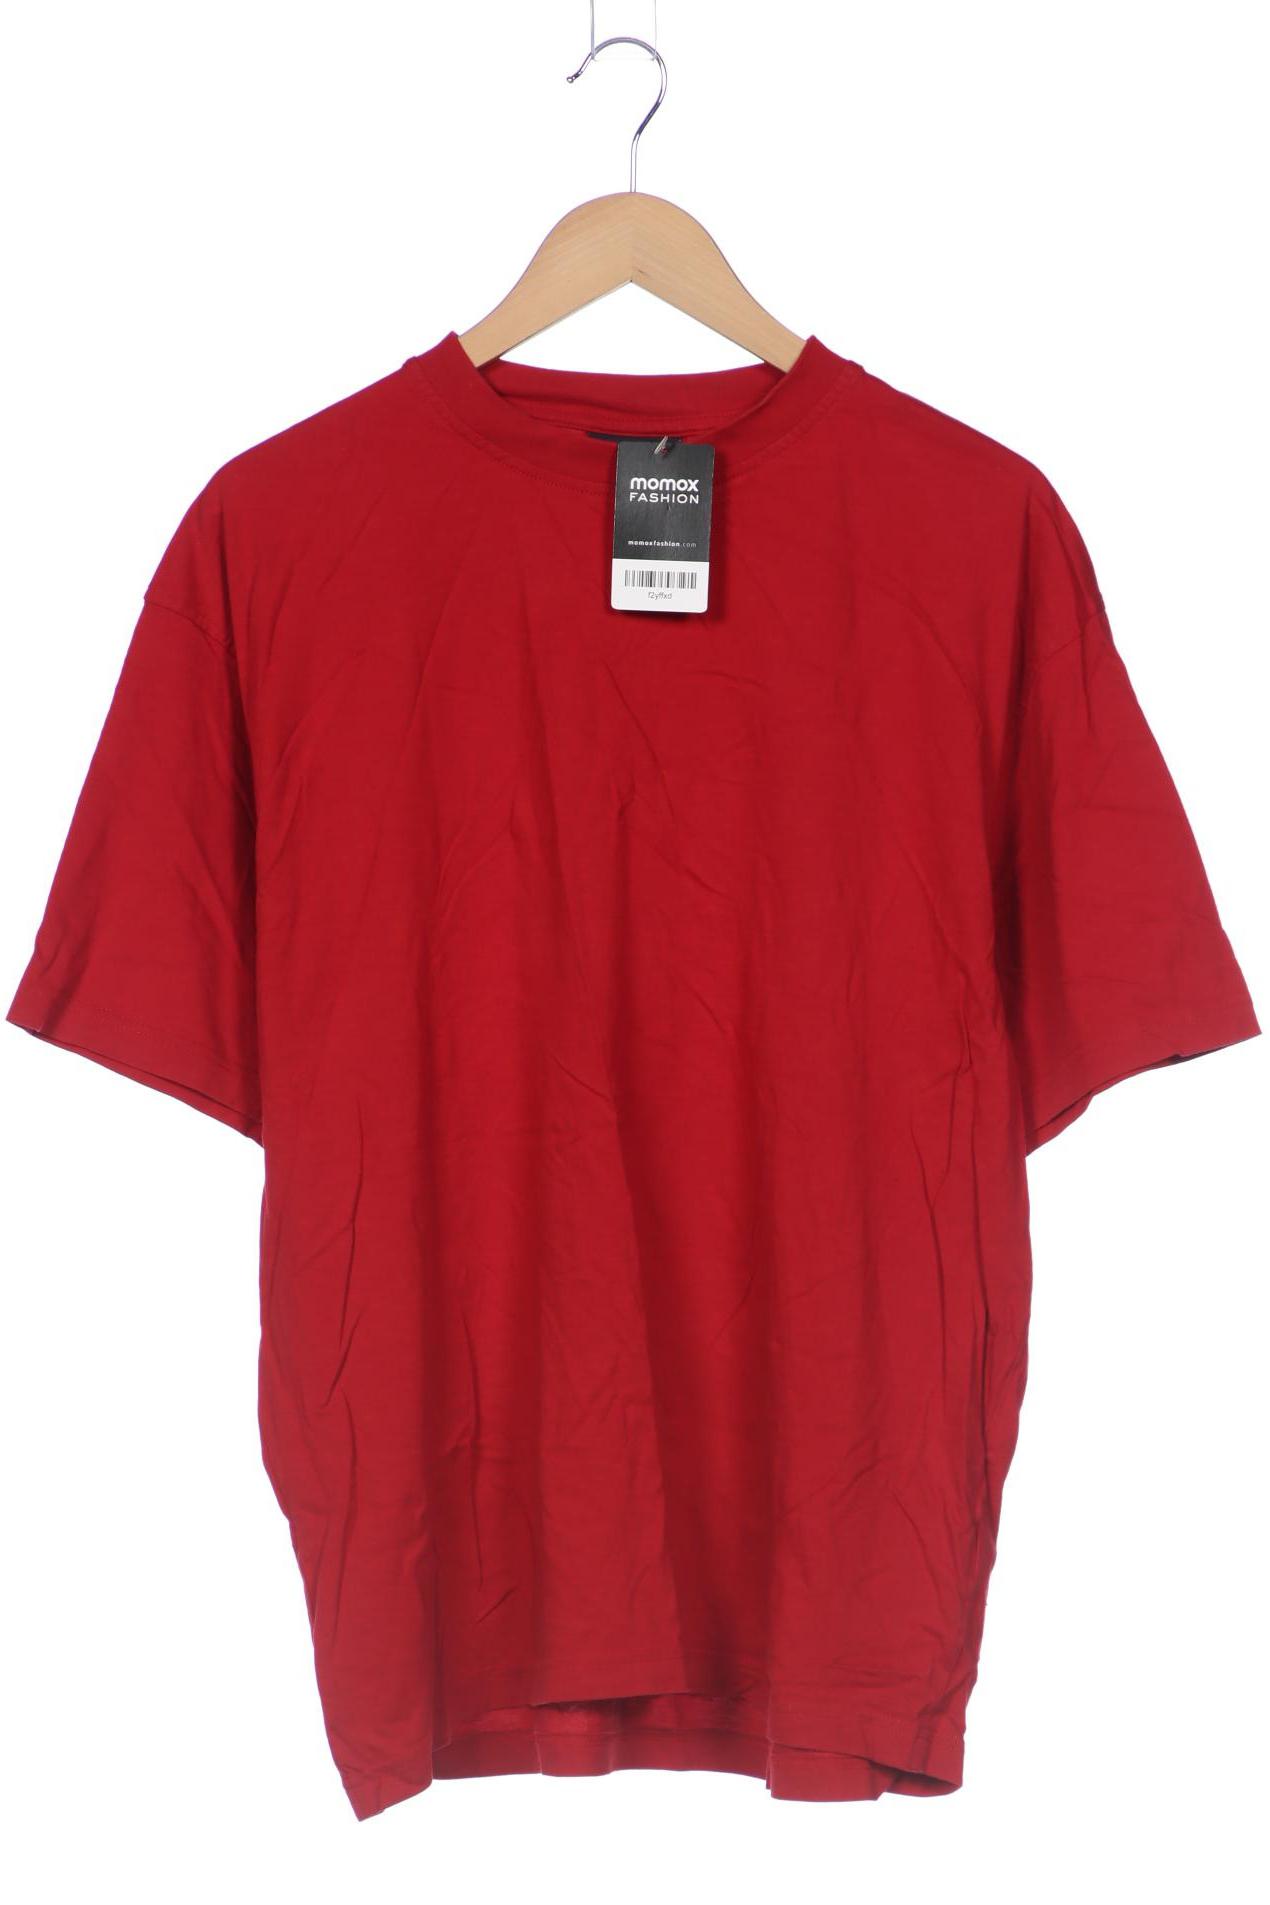 Lerros Herren T-Shirt, rot von Lerros